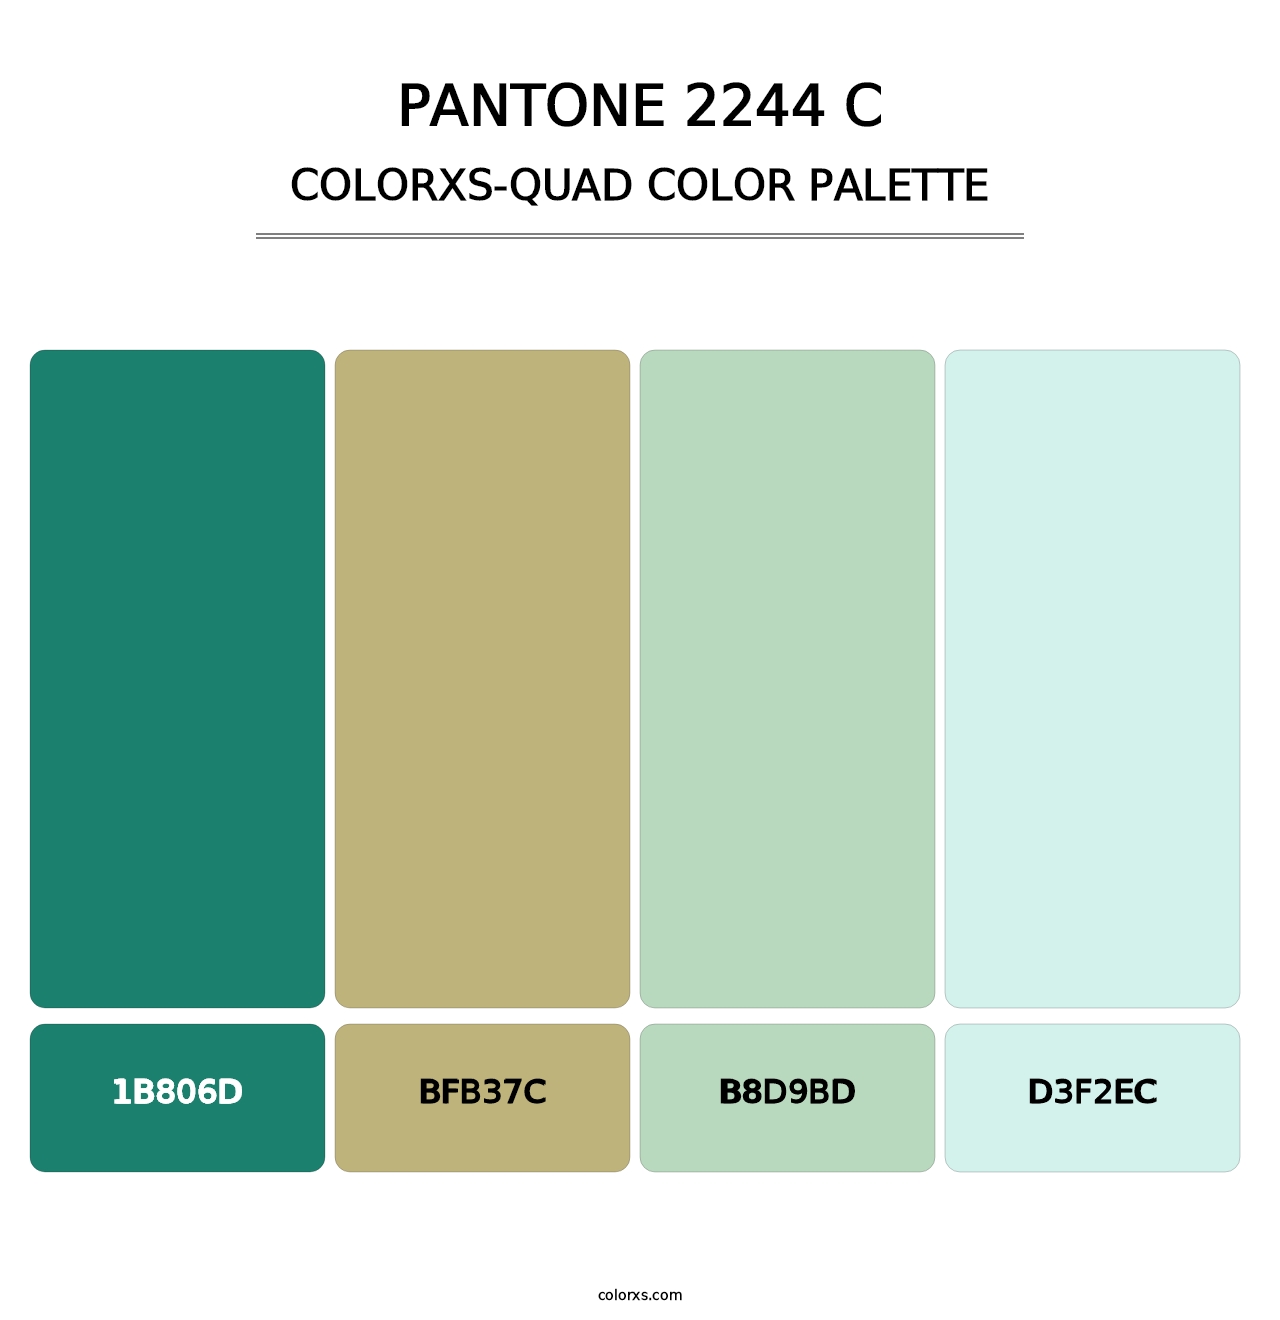 PANTONE 2244 C - Colorxs Quad Palette